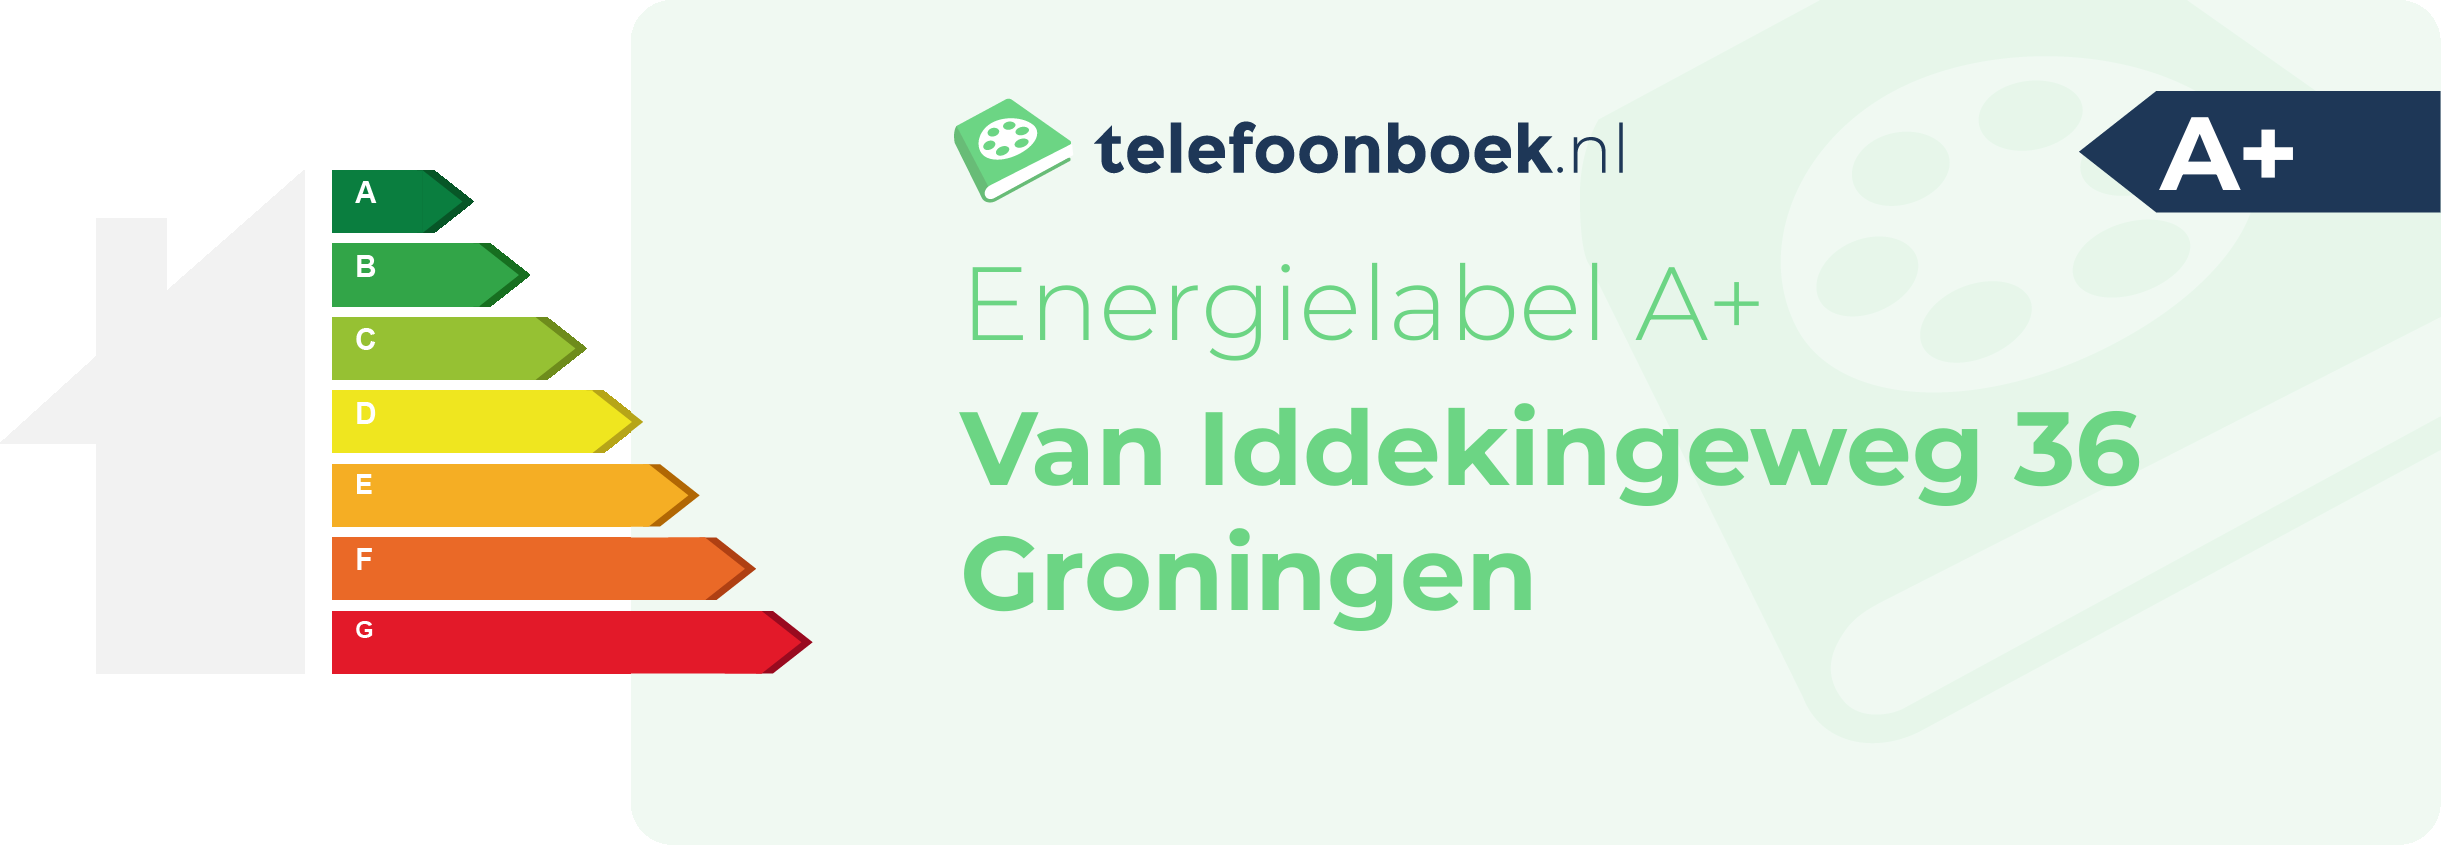 Energielabel Van Iddekingeweg 36 Groningen